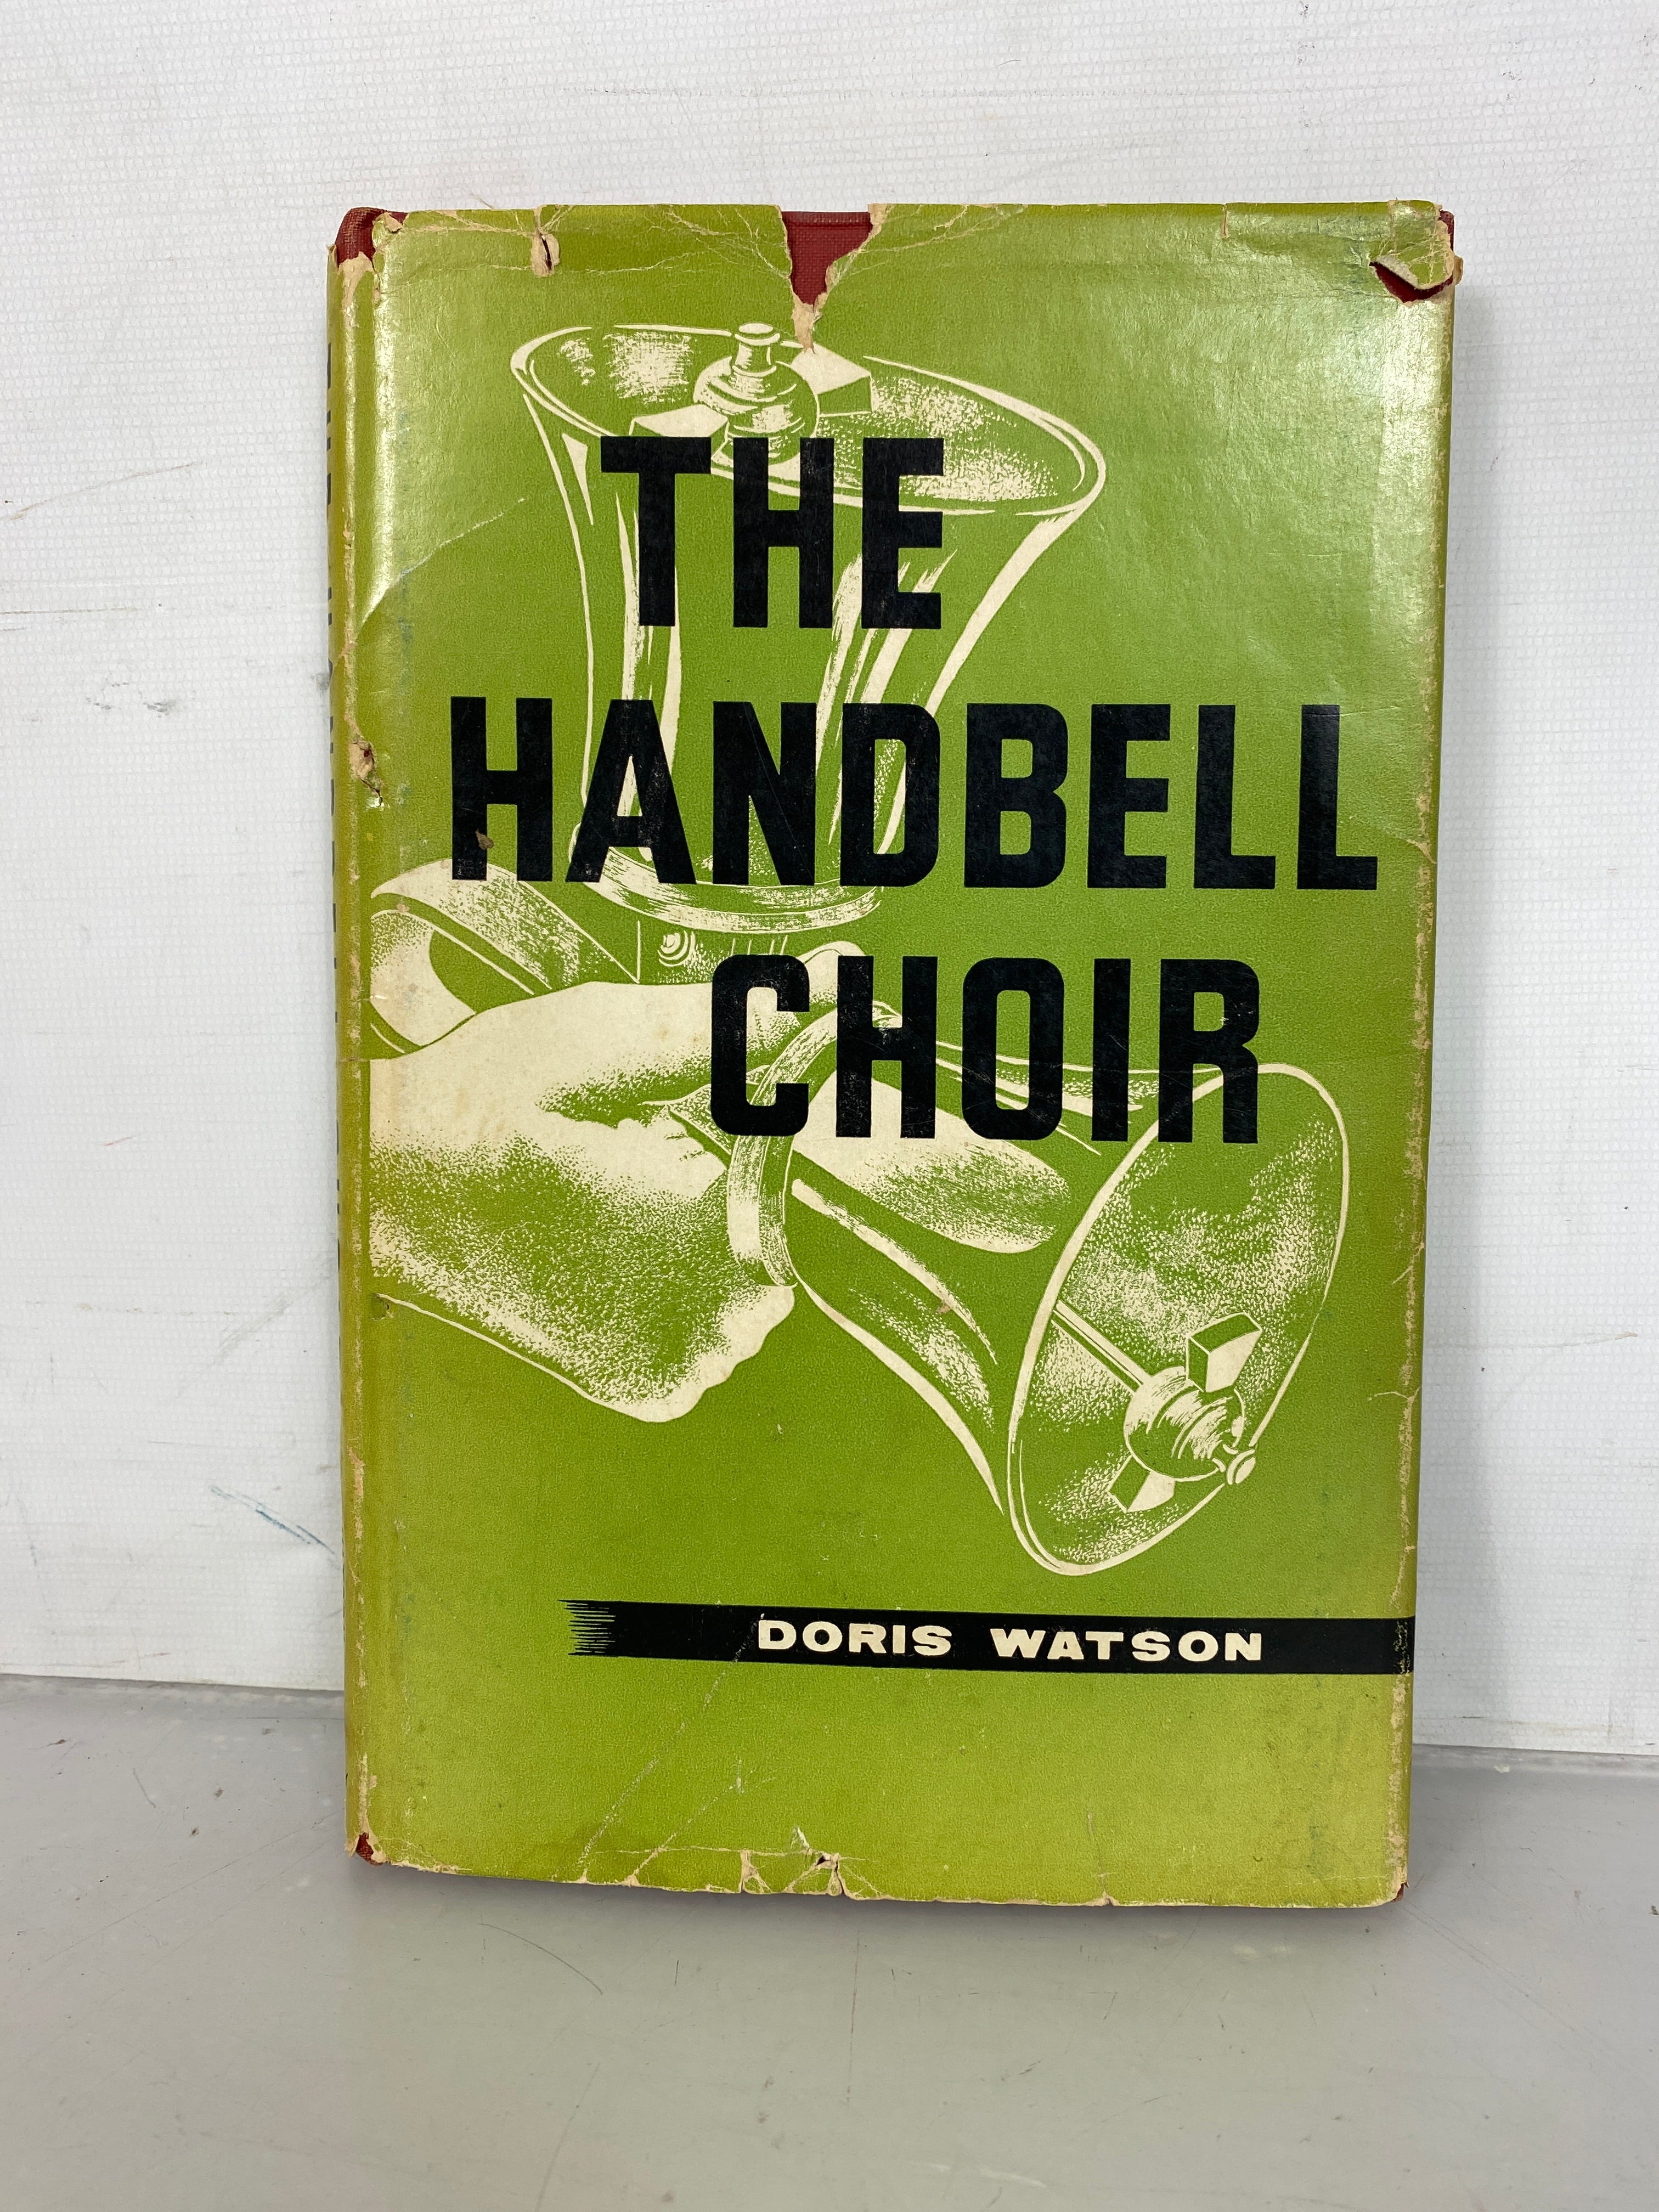 The Handbell Choir Doris Watson 1959 First Edition HC DJ